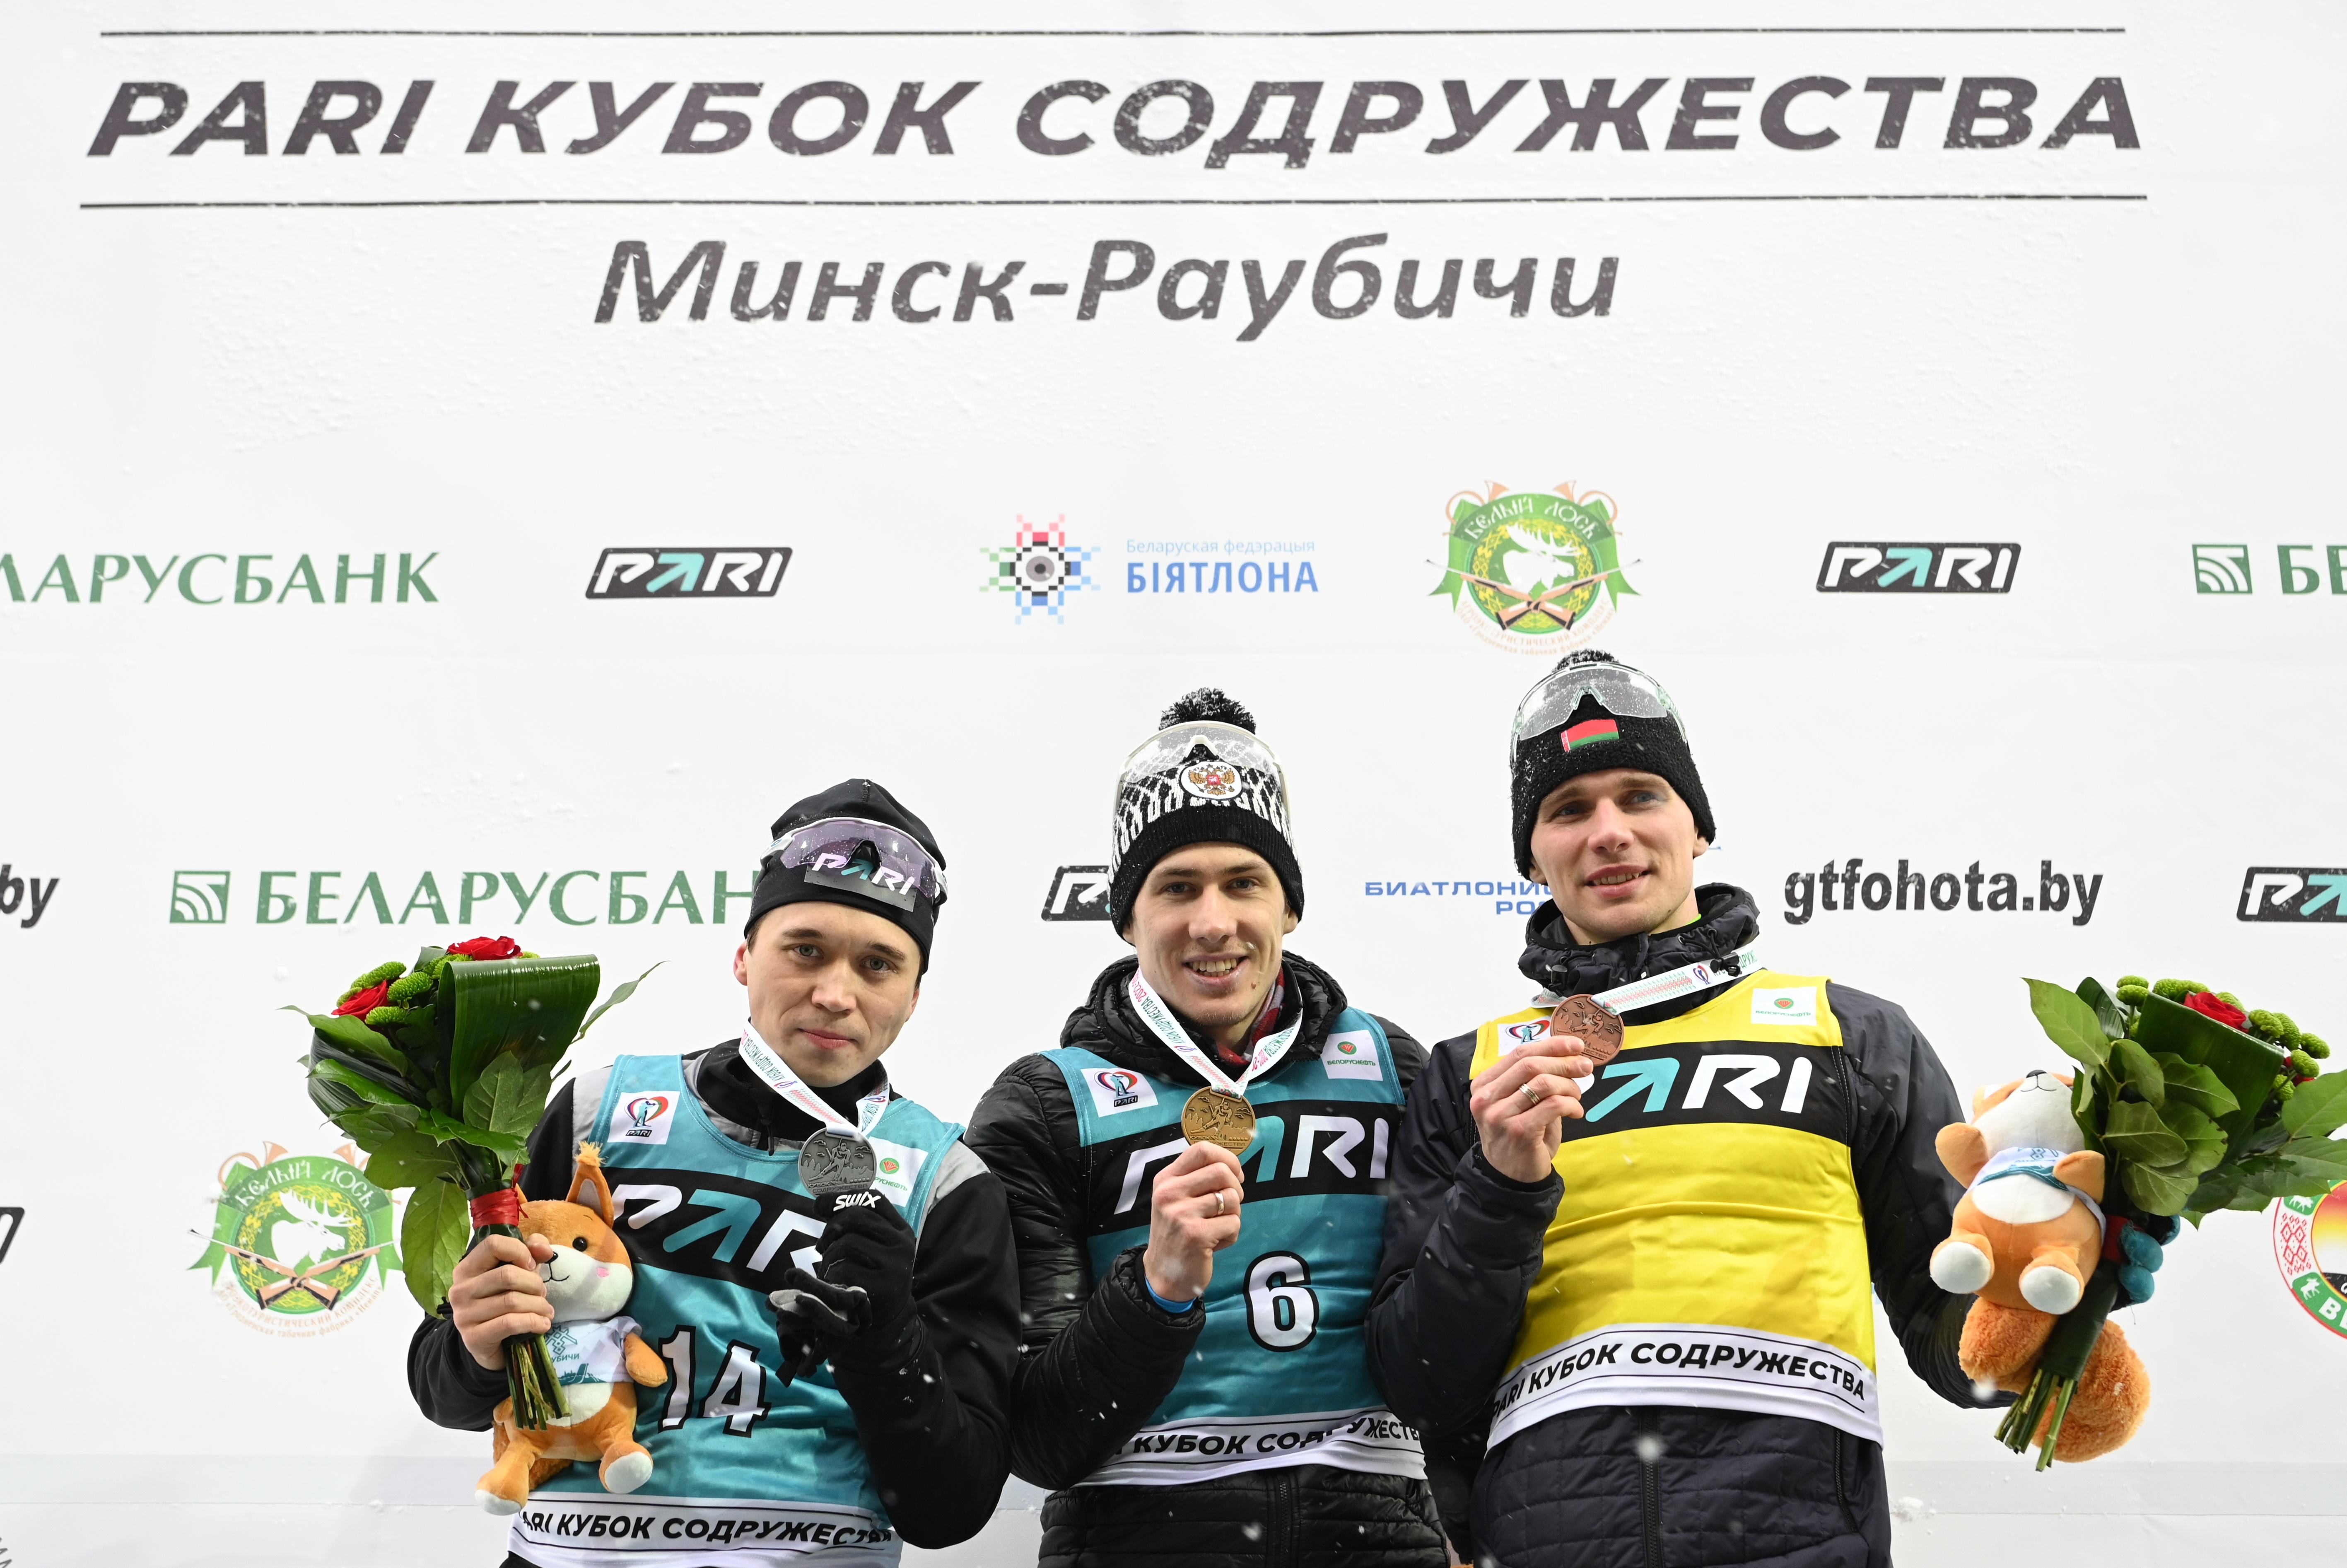 Российский биатлонист Эдуард Латыпов одержал победу в спринте на этапе Кубка Содружества 